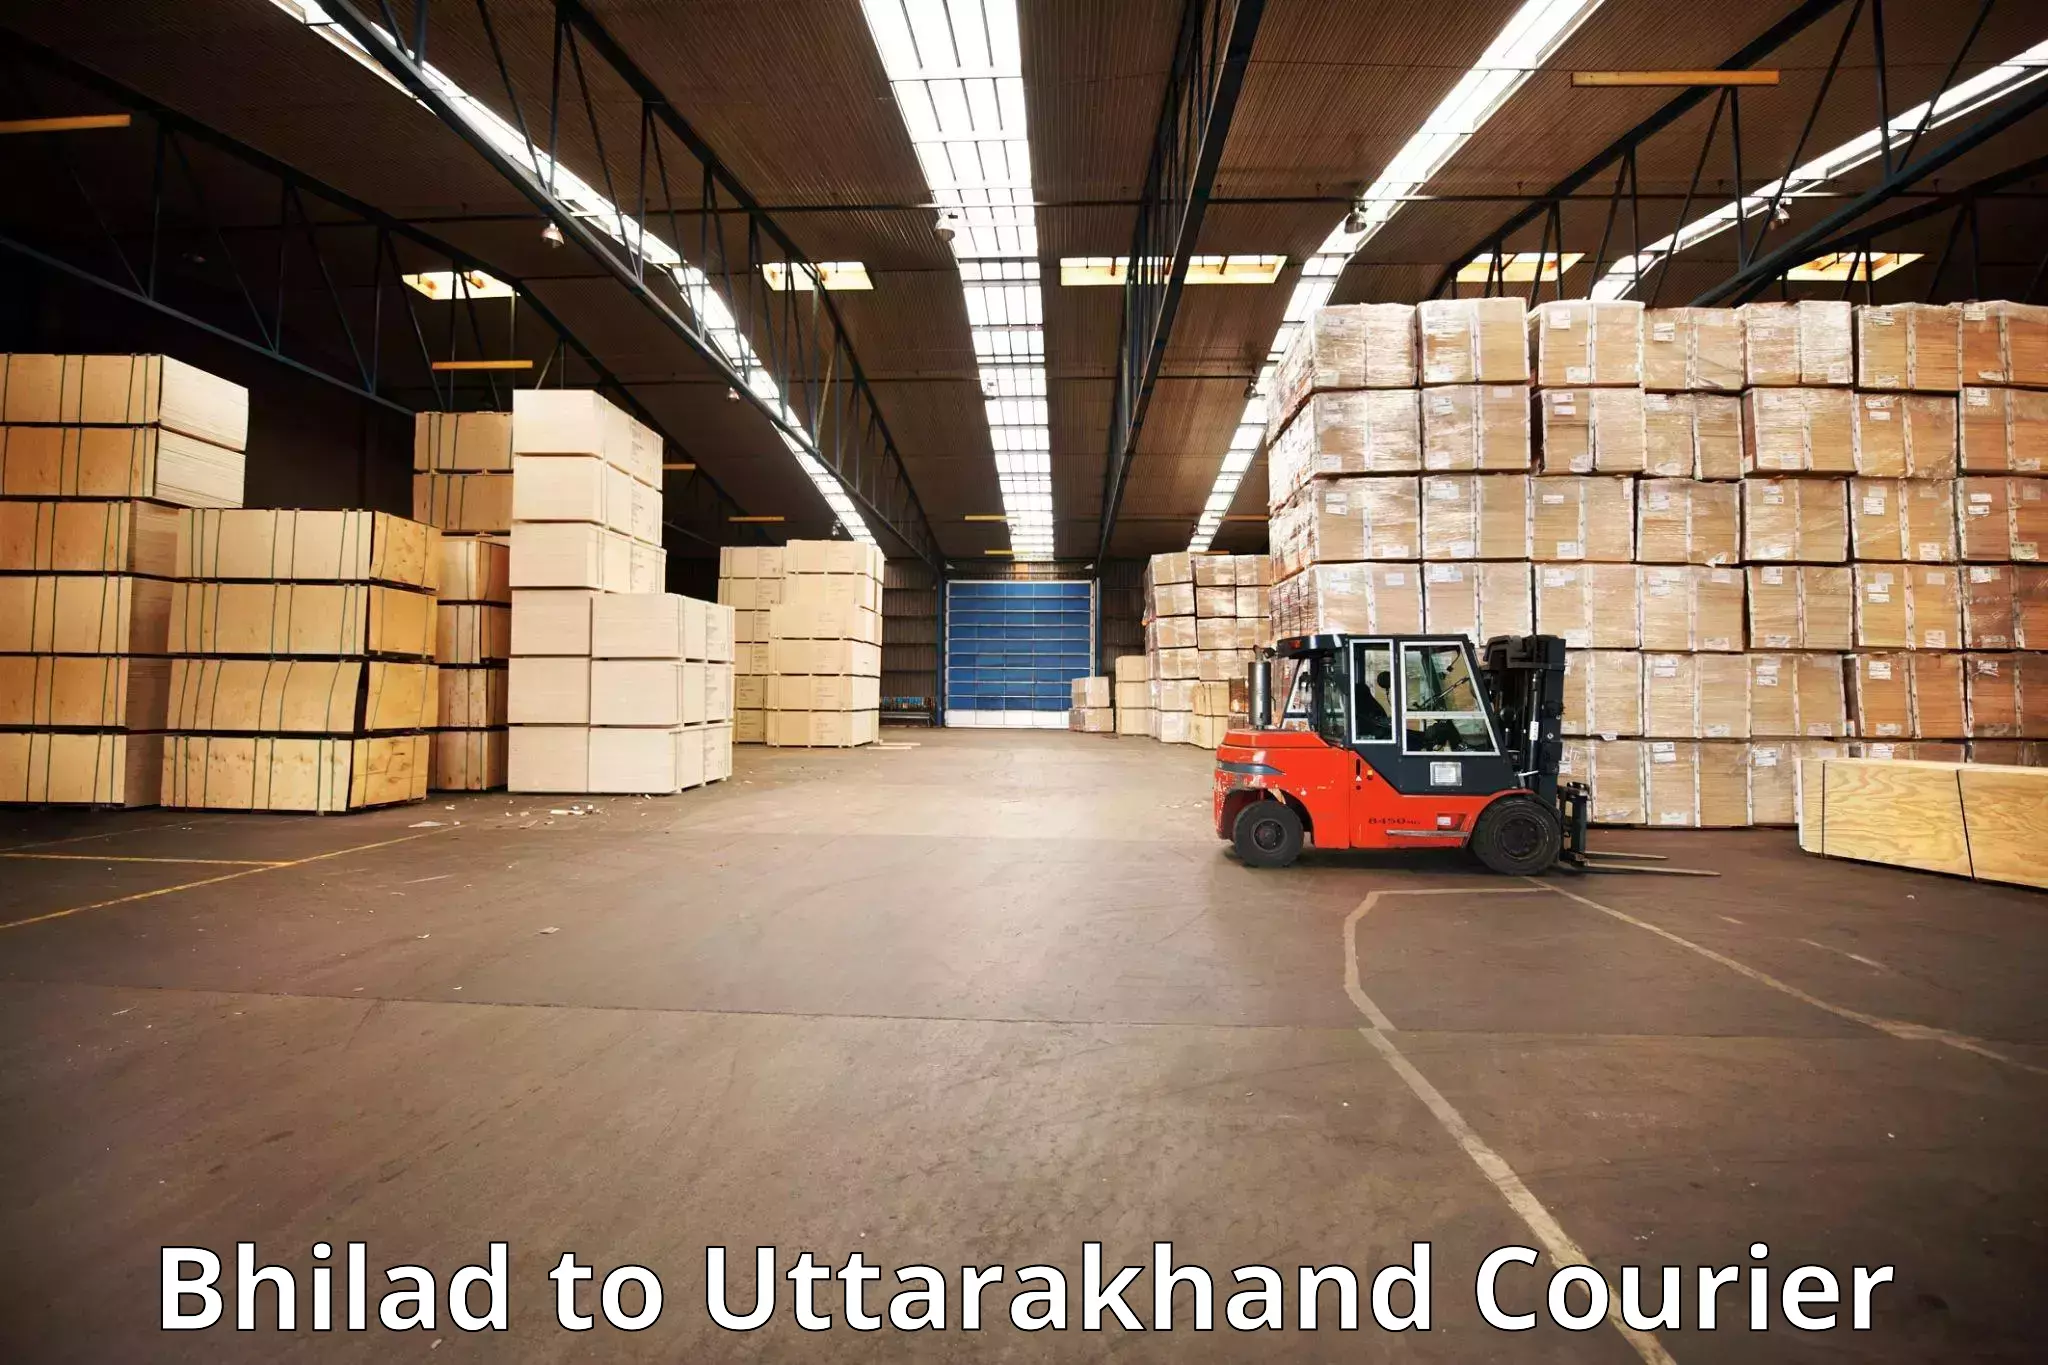 Luggage shipment processing Bhilad to Nainital